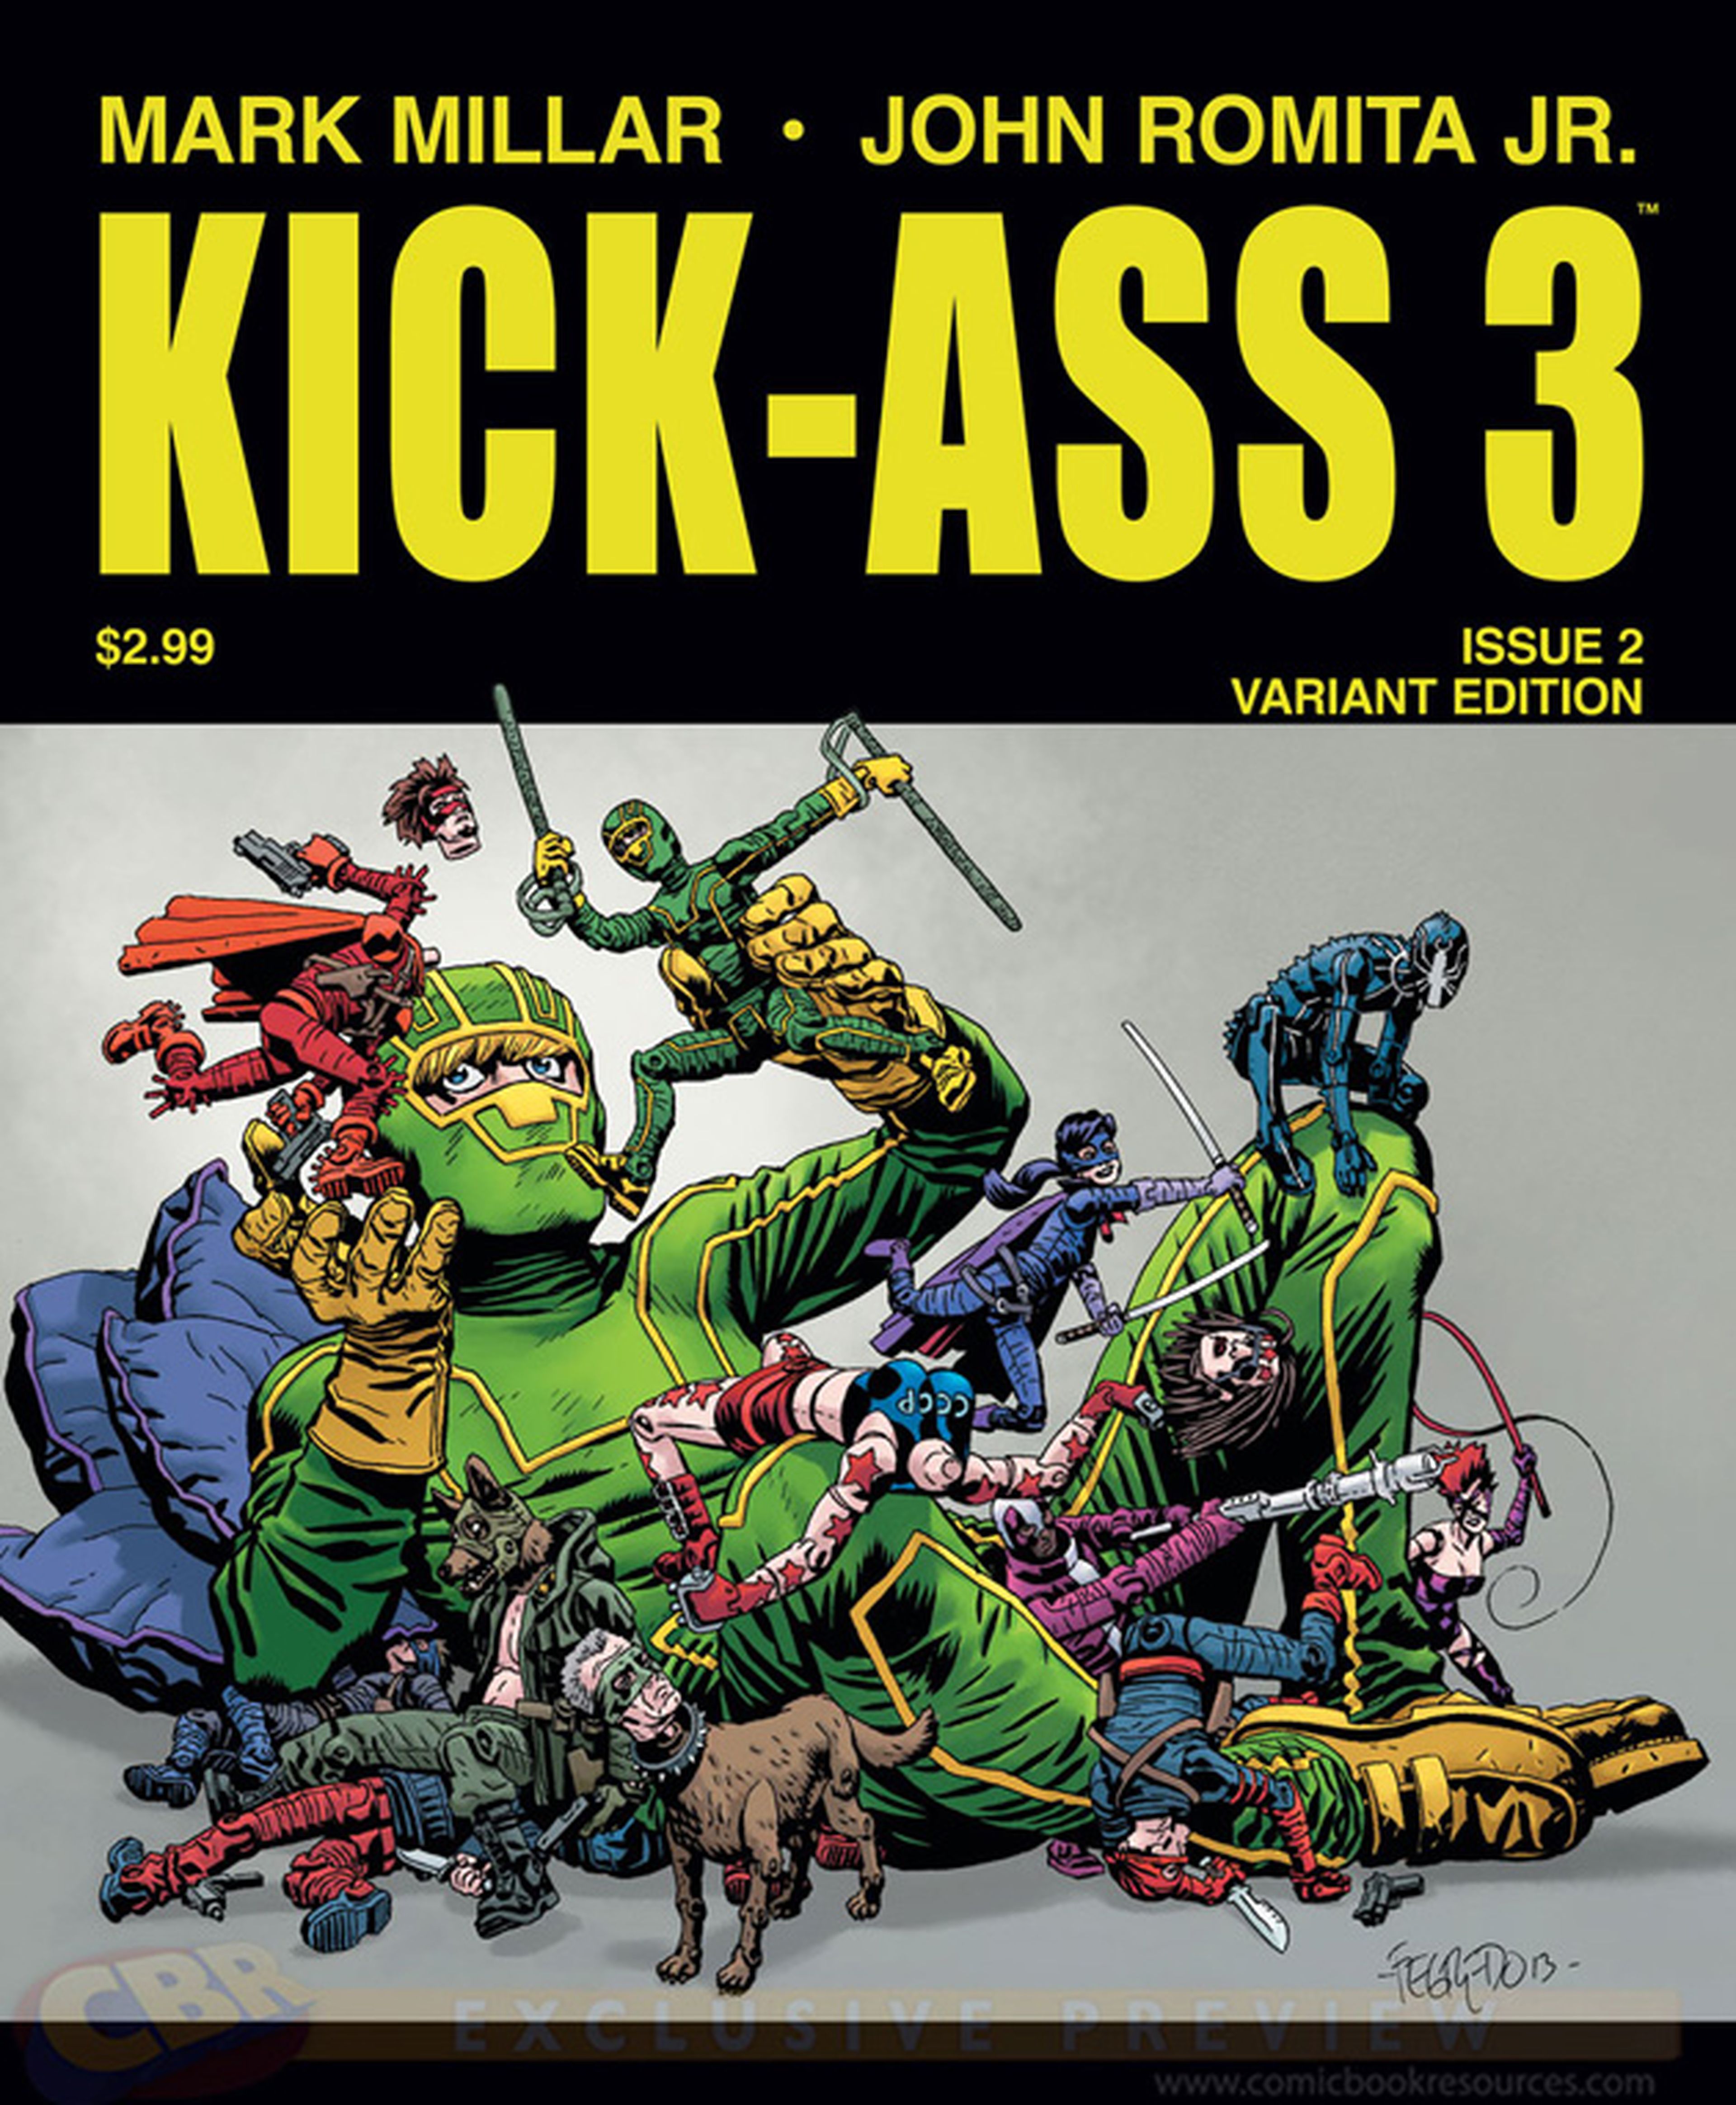 Avance EEUU: Primeras páginas de Kick-Ass 3